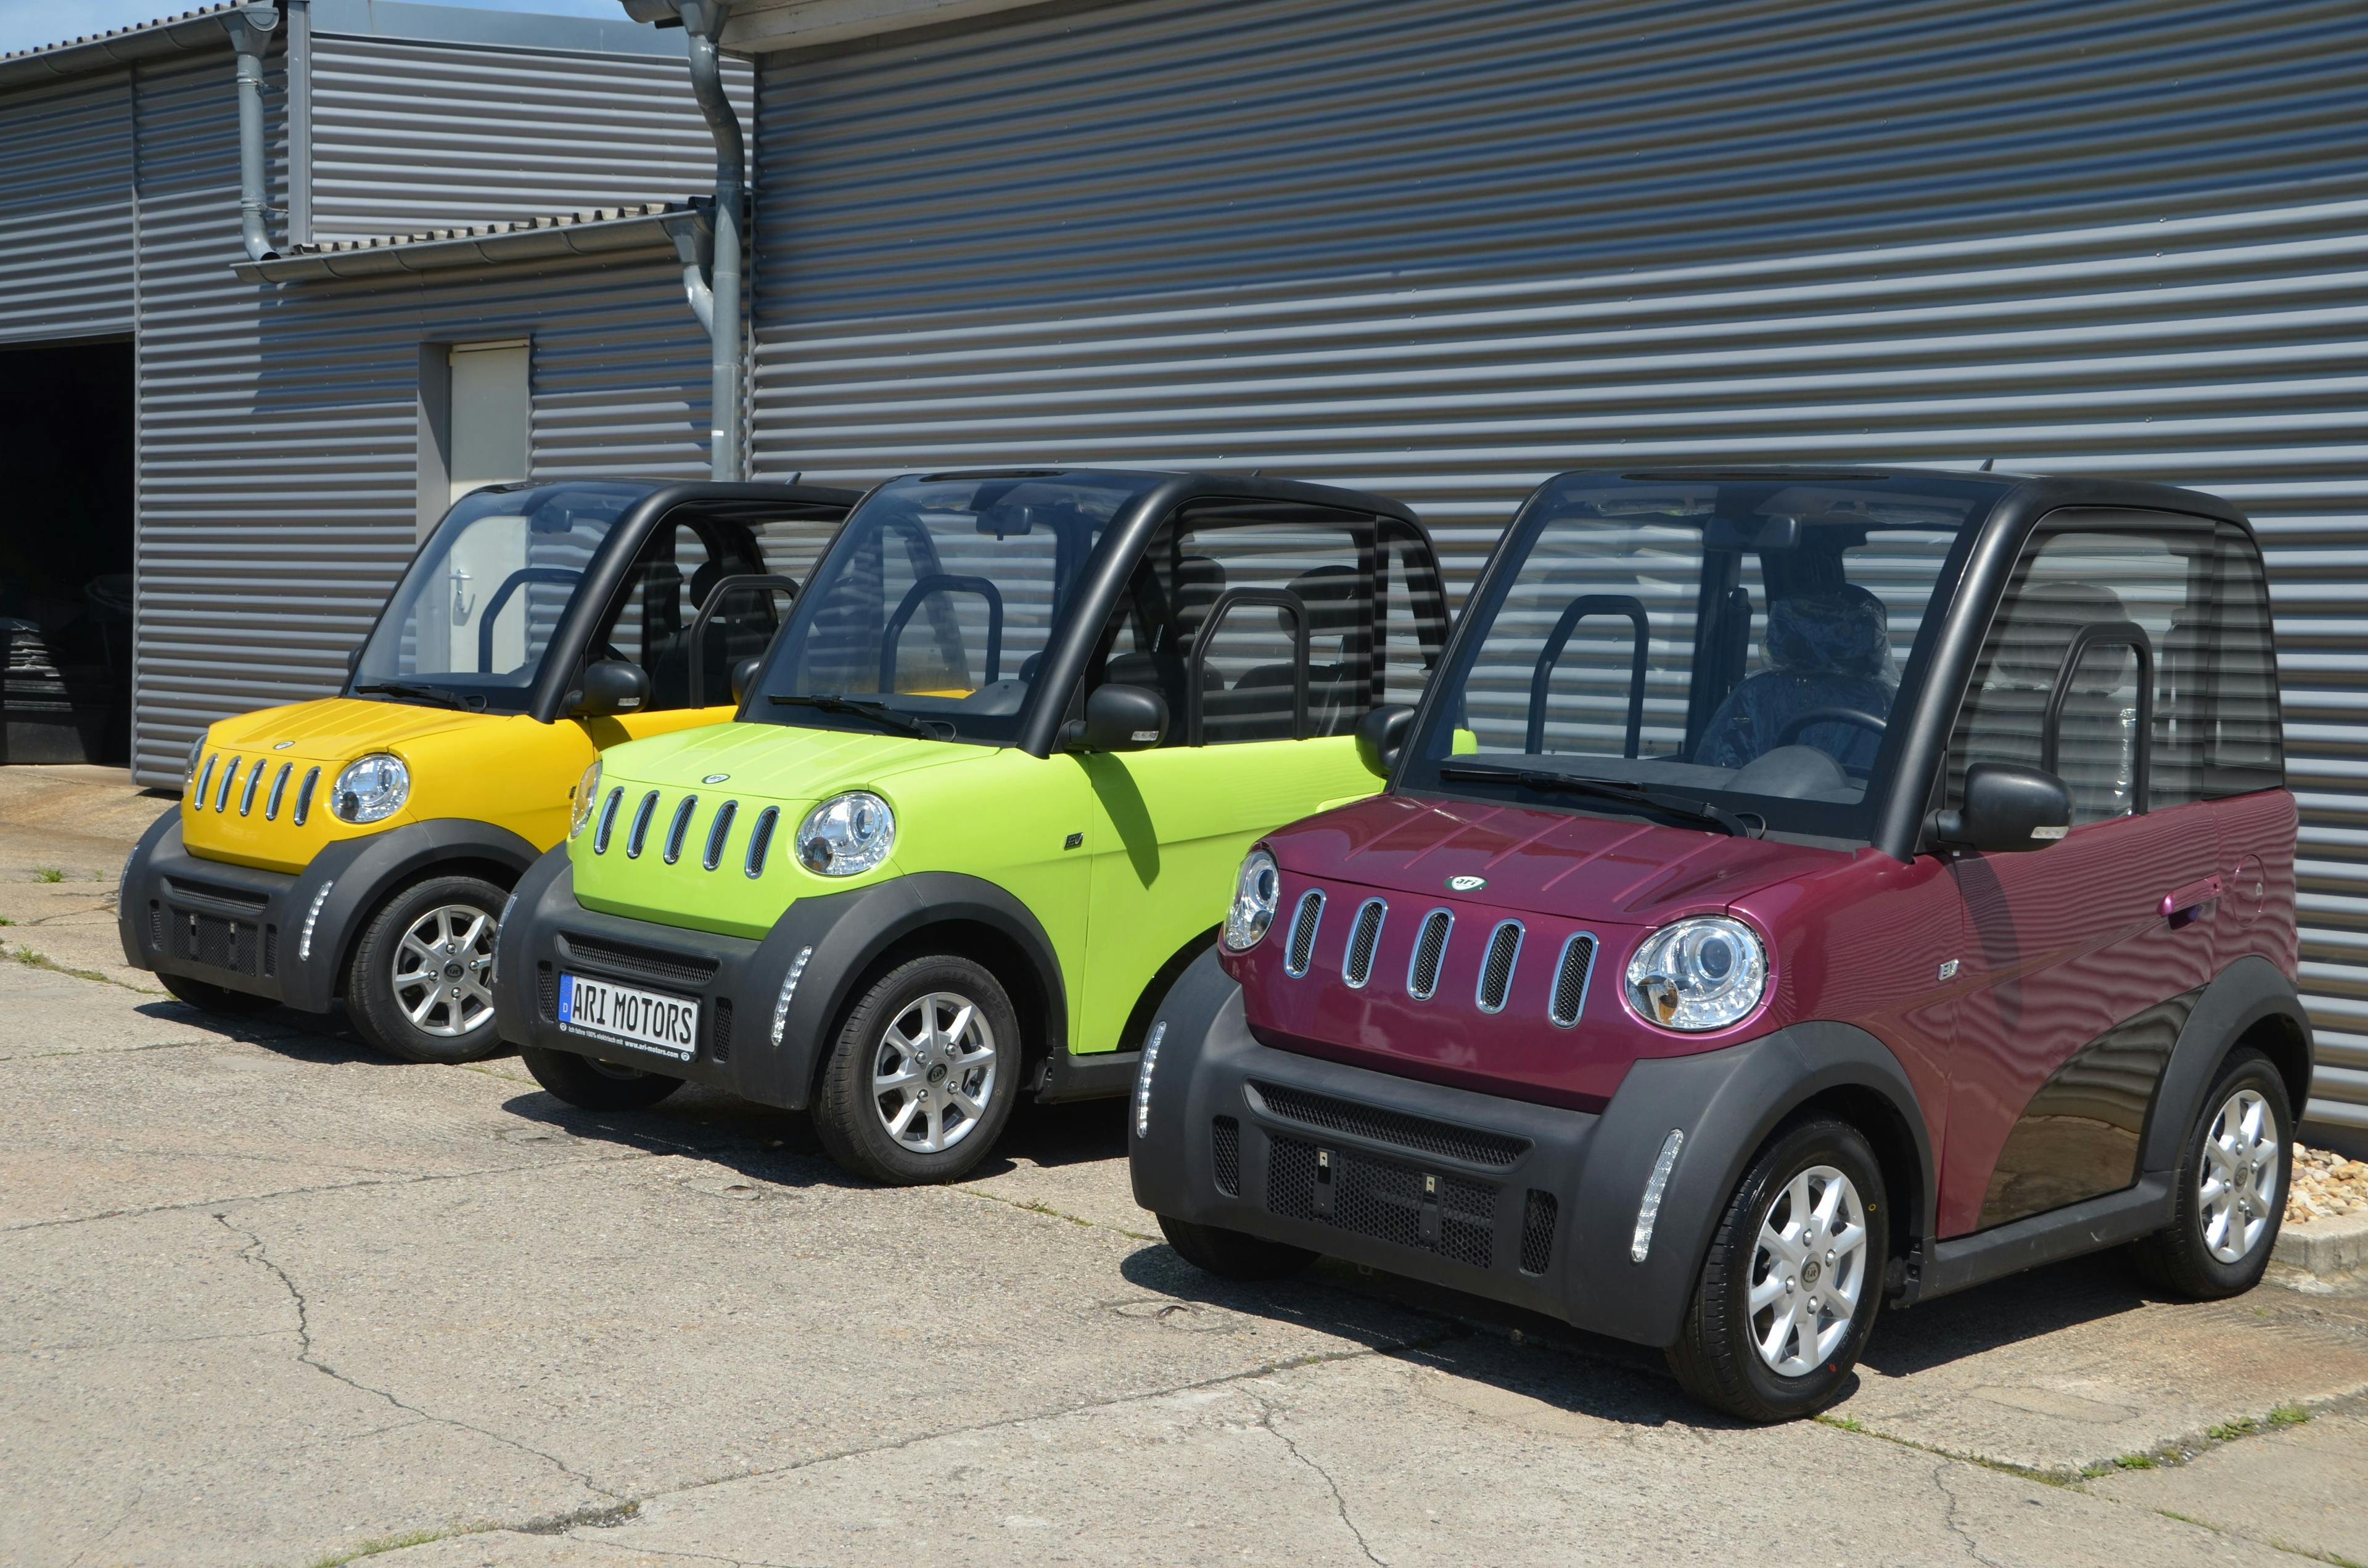 (B)unter Strom: Diese Fahrzeugfarben sind für ARI-Elektrofahrzeuge erhältlich